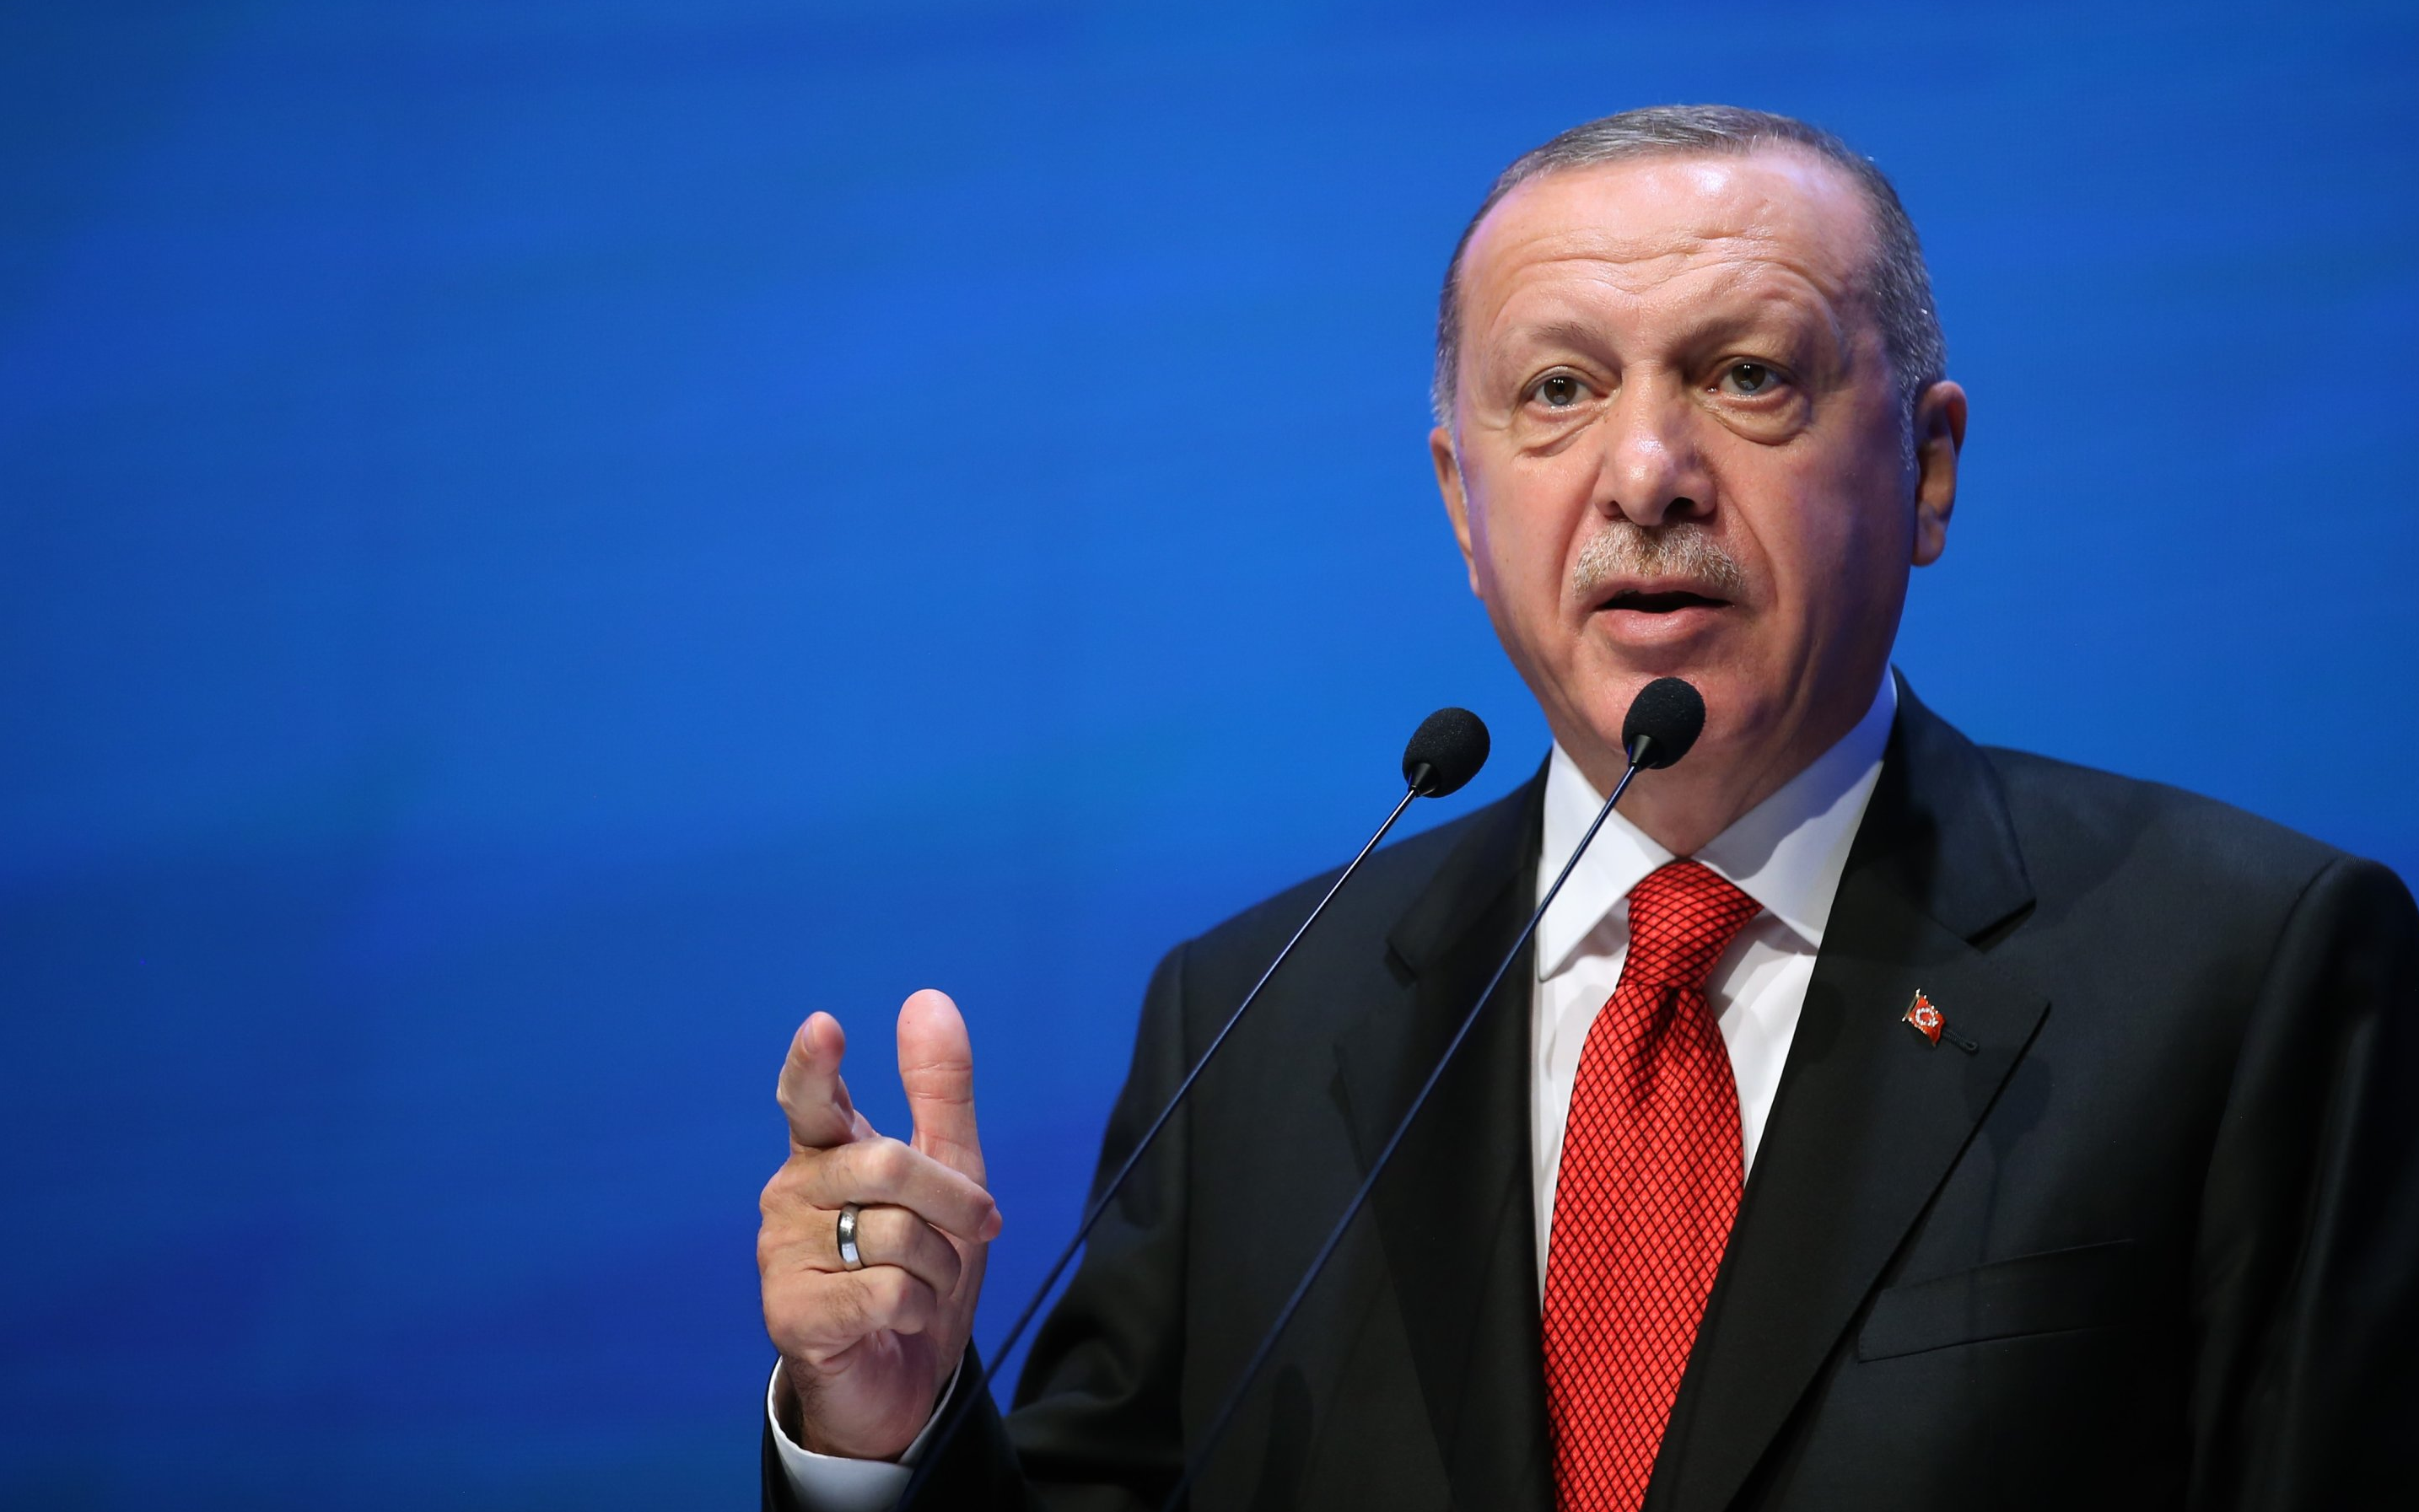 Erdoğan’dan Kılıçdaroğlu’na tepki